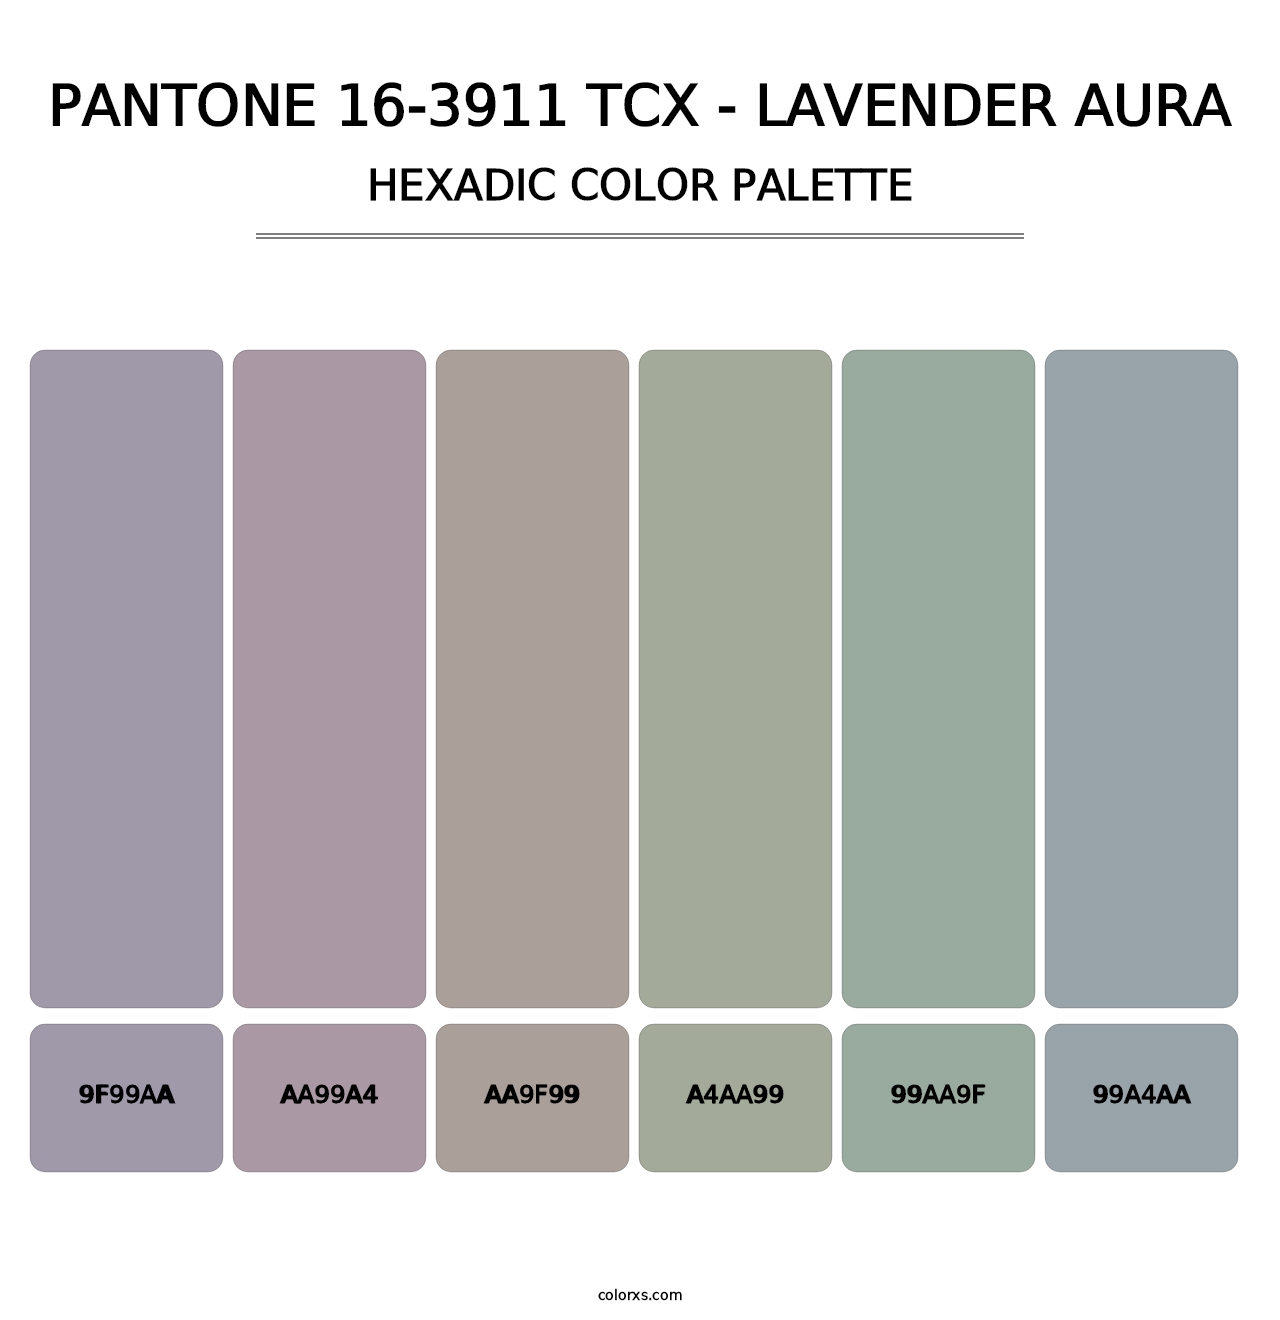 PANTONE 16-3911 TCX - Lavender Aura - Hexadic Color Palette